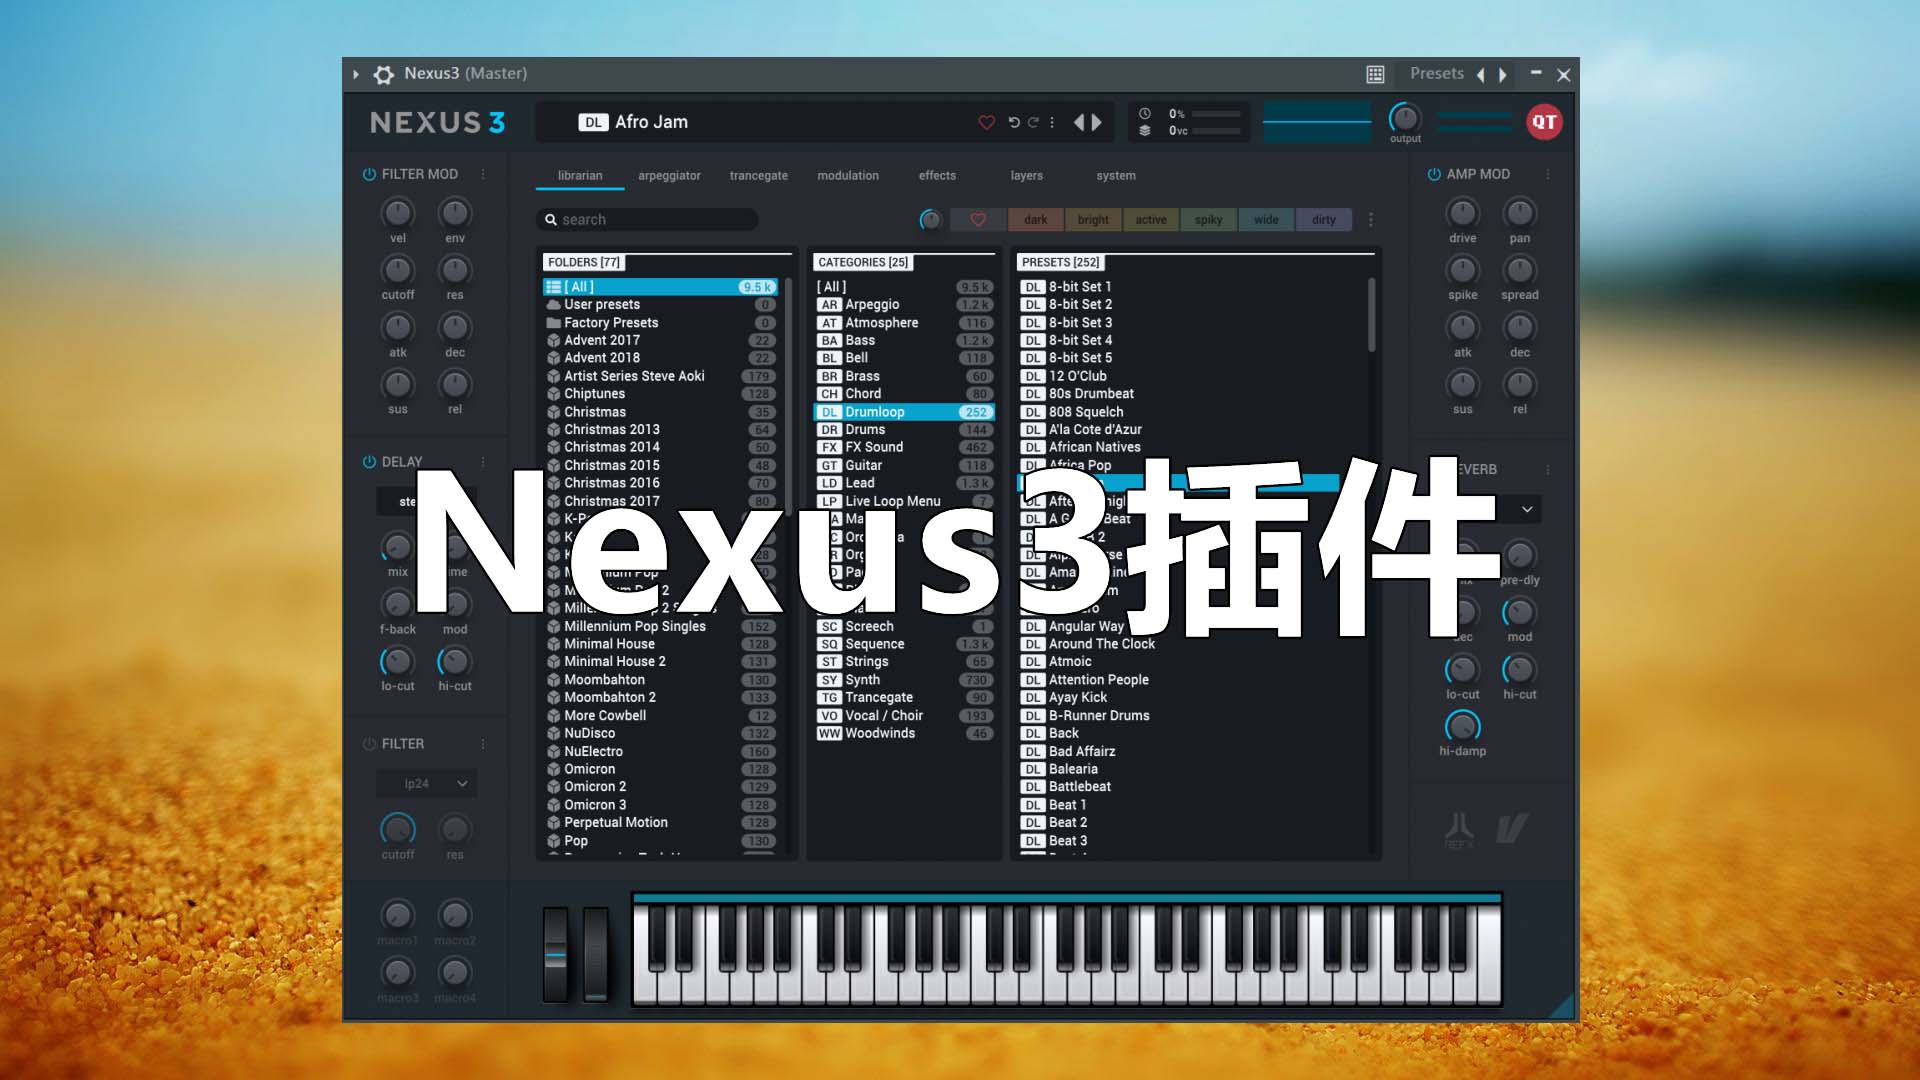 Nexus3合成器完整音色库版 (音乐制作人必备合成器) 音色超多! Nexus3插件+ 完整音色库版 [Win\Mac完整音色库版]